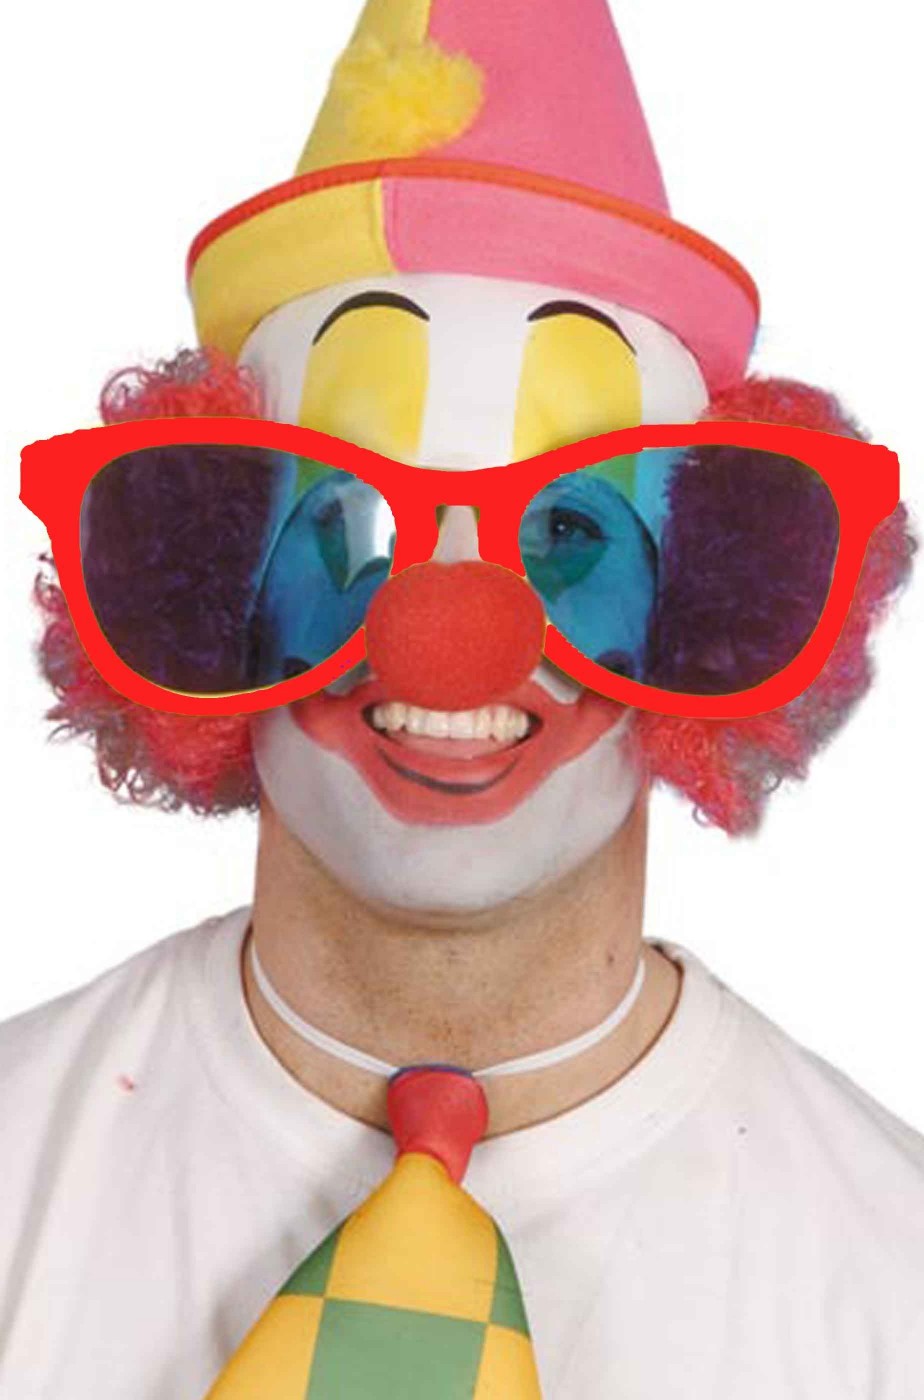 Grandi occhiali da clown o pagliaccio jumbo